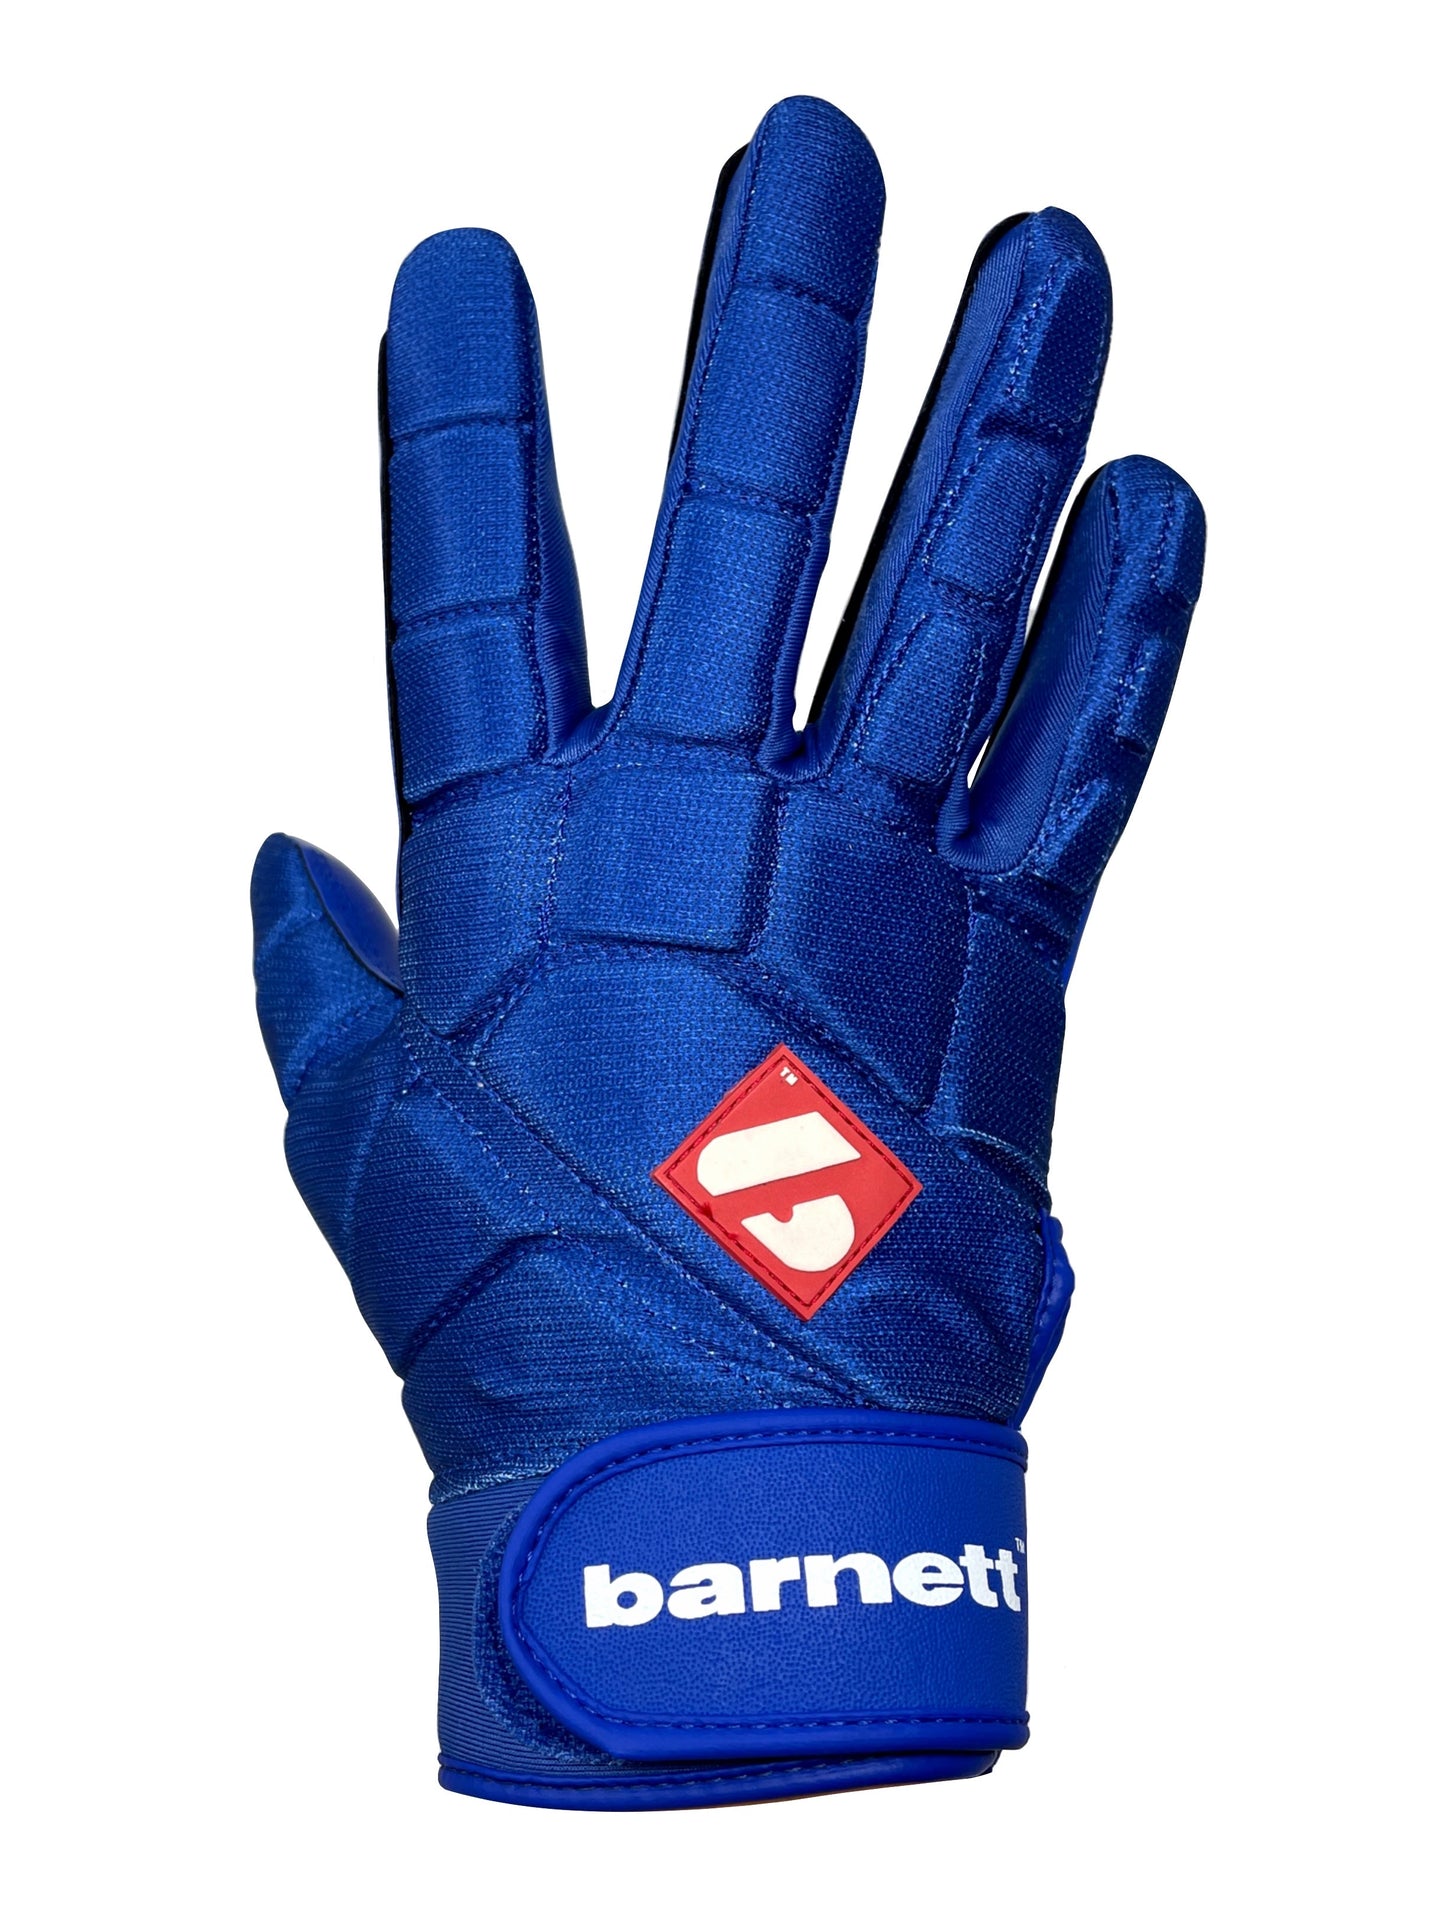 FKG-03 Blue High Level Linebacker Football Gloves, LB, RB, TE